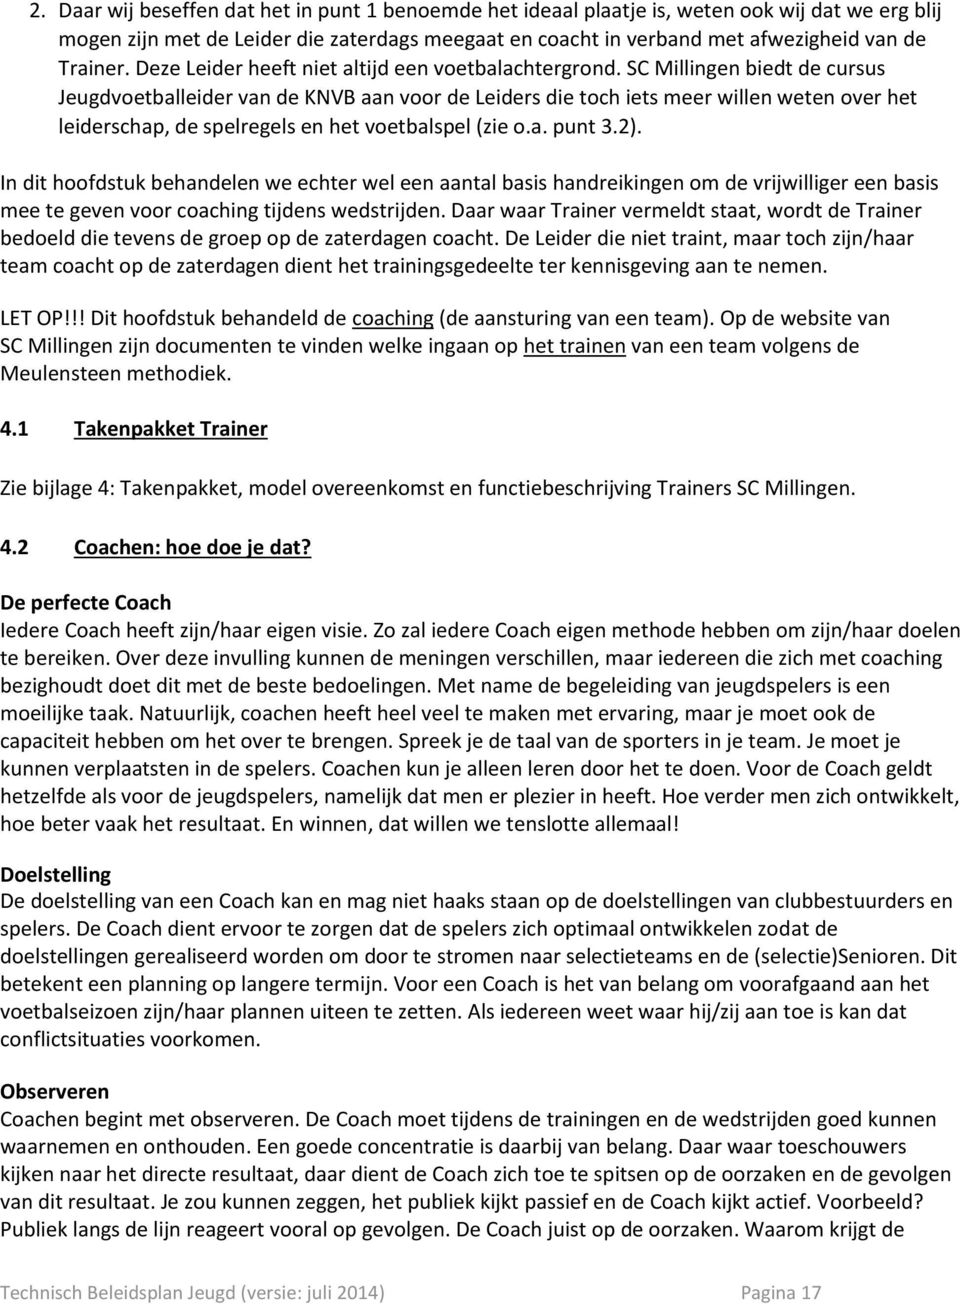 SC Millingen biedt de cursus Jeugdvoetballeider van de KNVB aan voor de Leiders die toch iets meer willen weten over het leiderschap, de spelregels en het voetbalspel (zie o.a. punt 3.2).